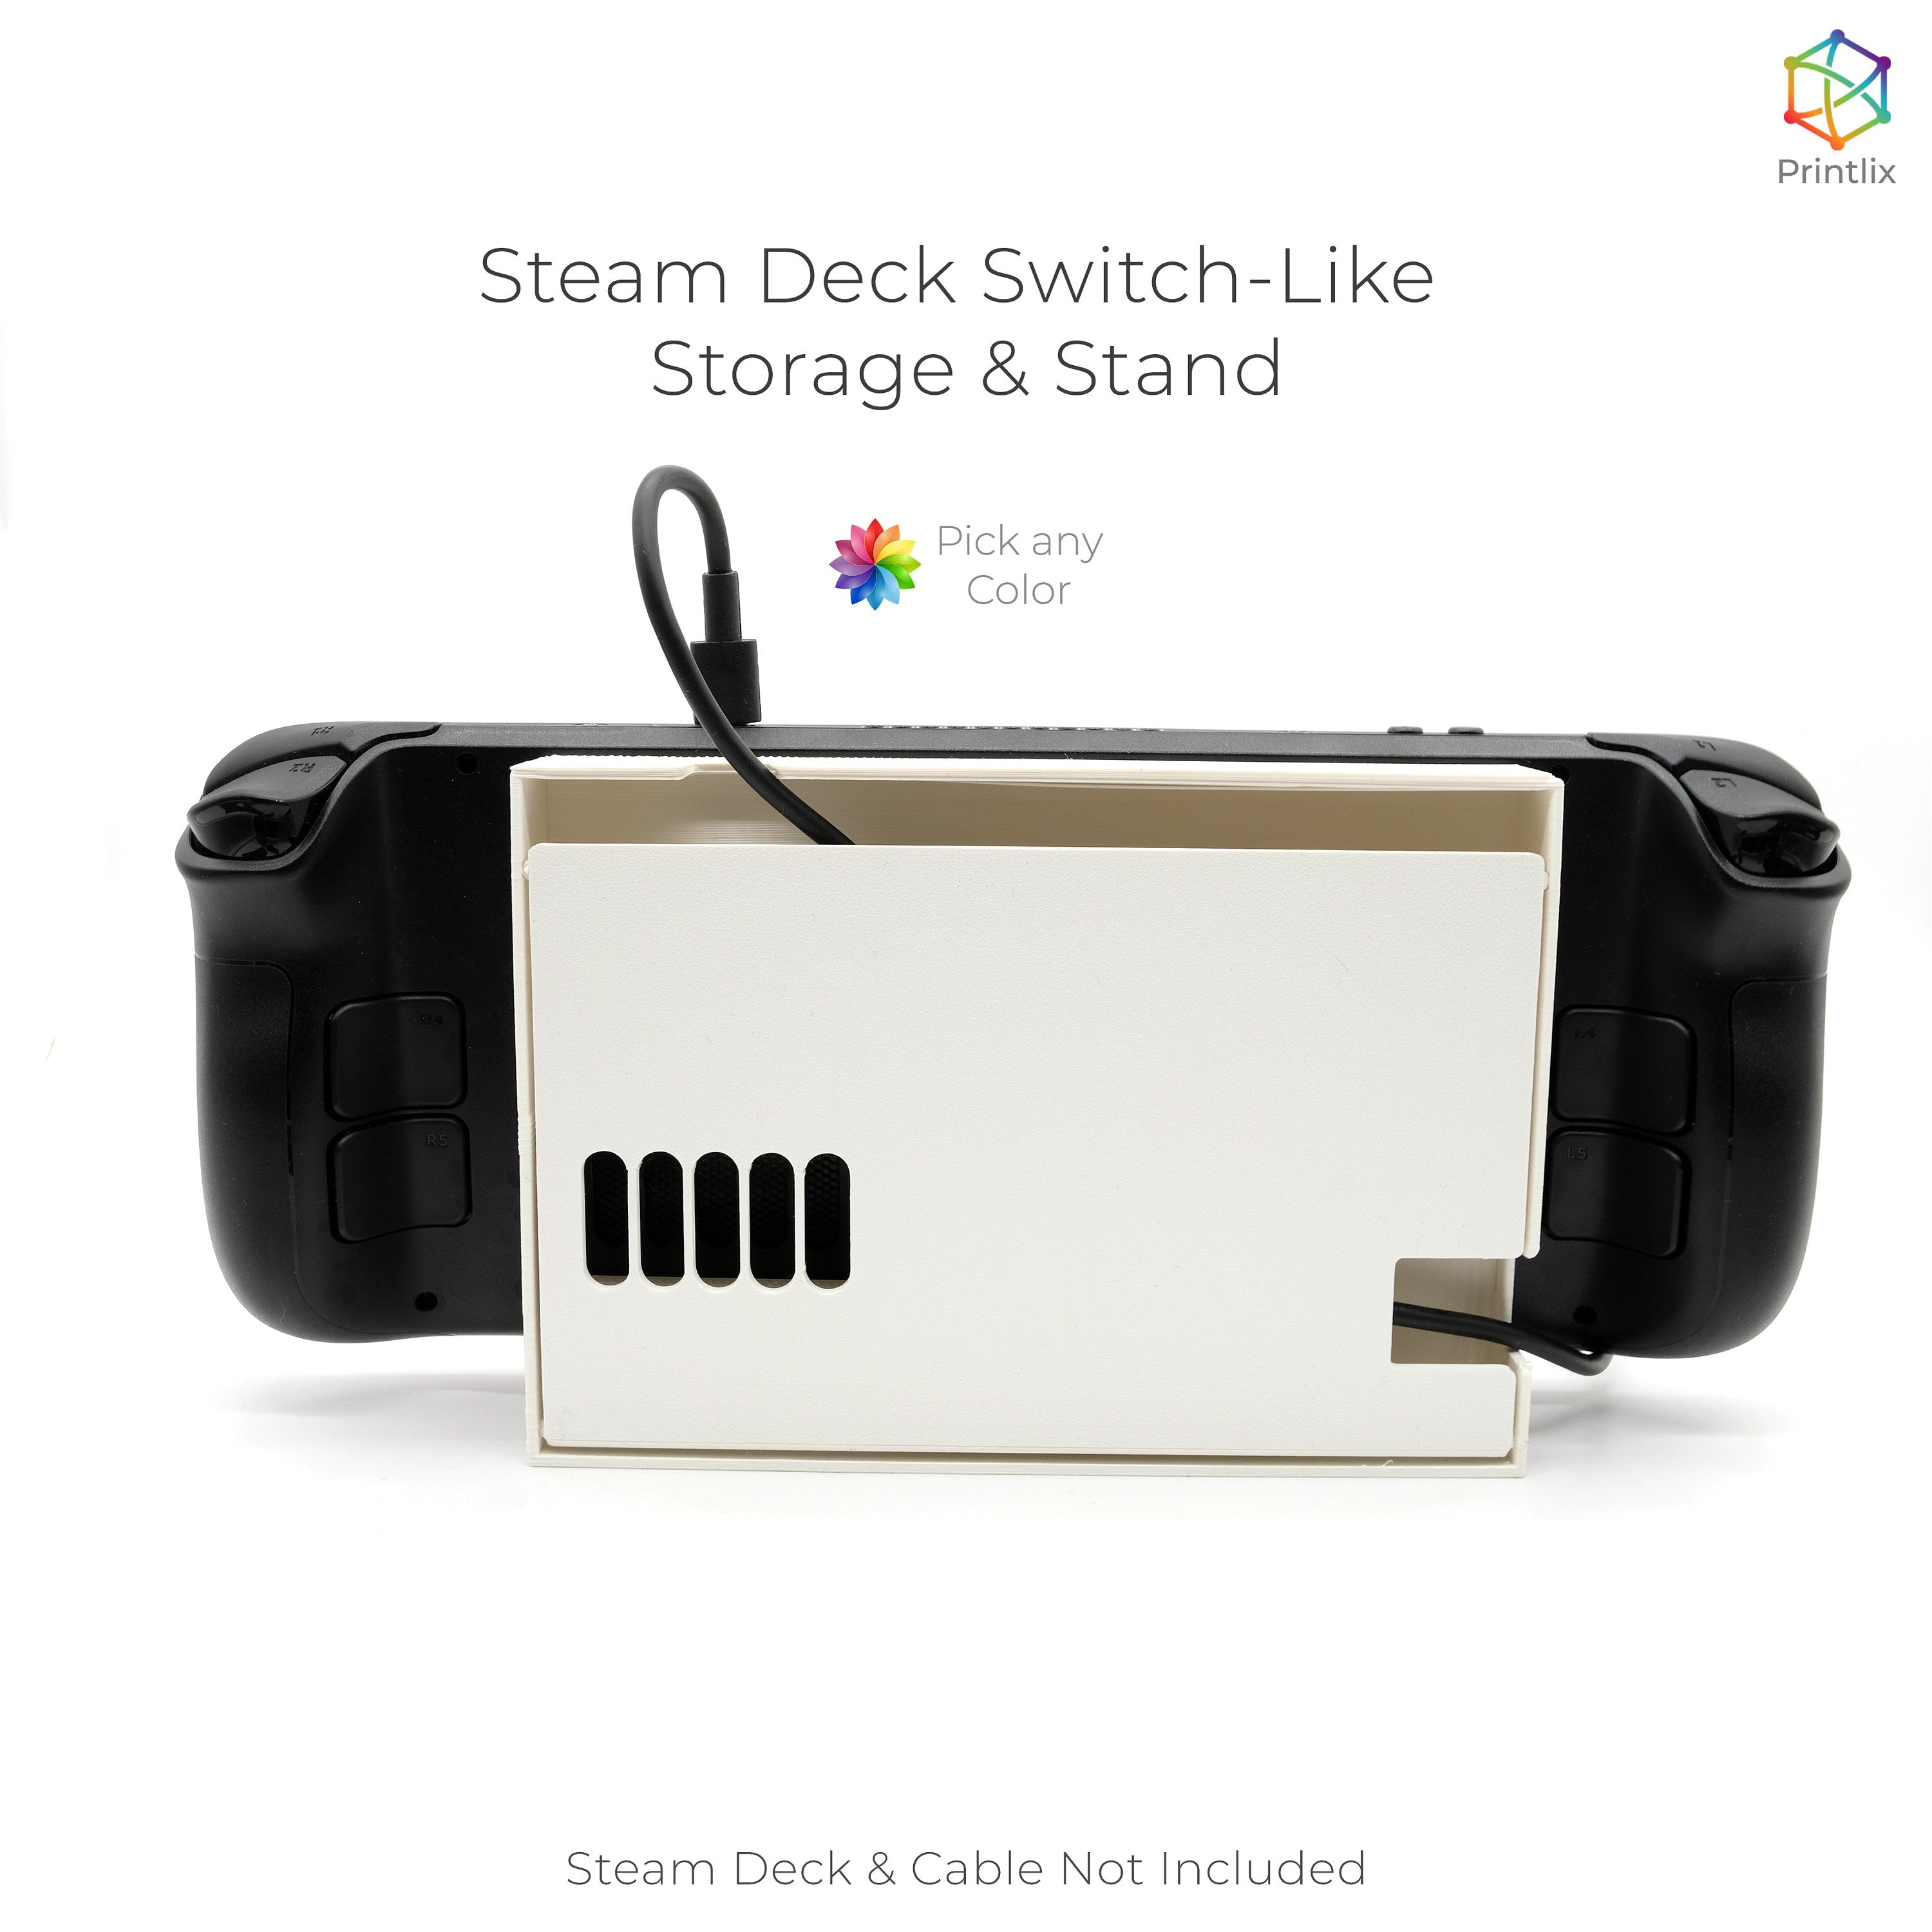 Steam Deck Switch-Life Storage & Stand